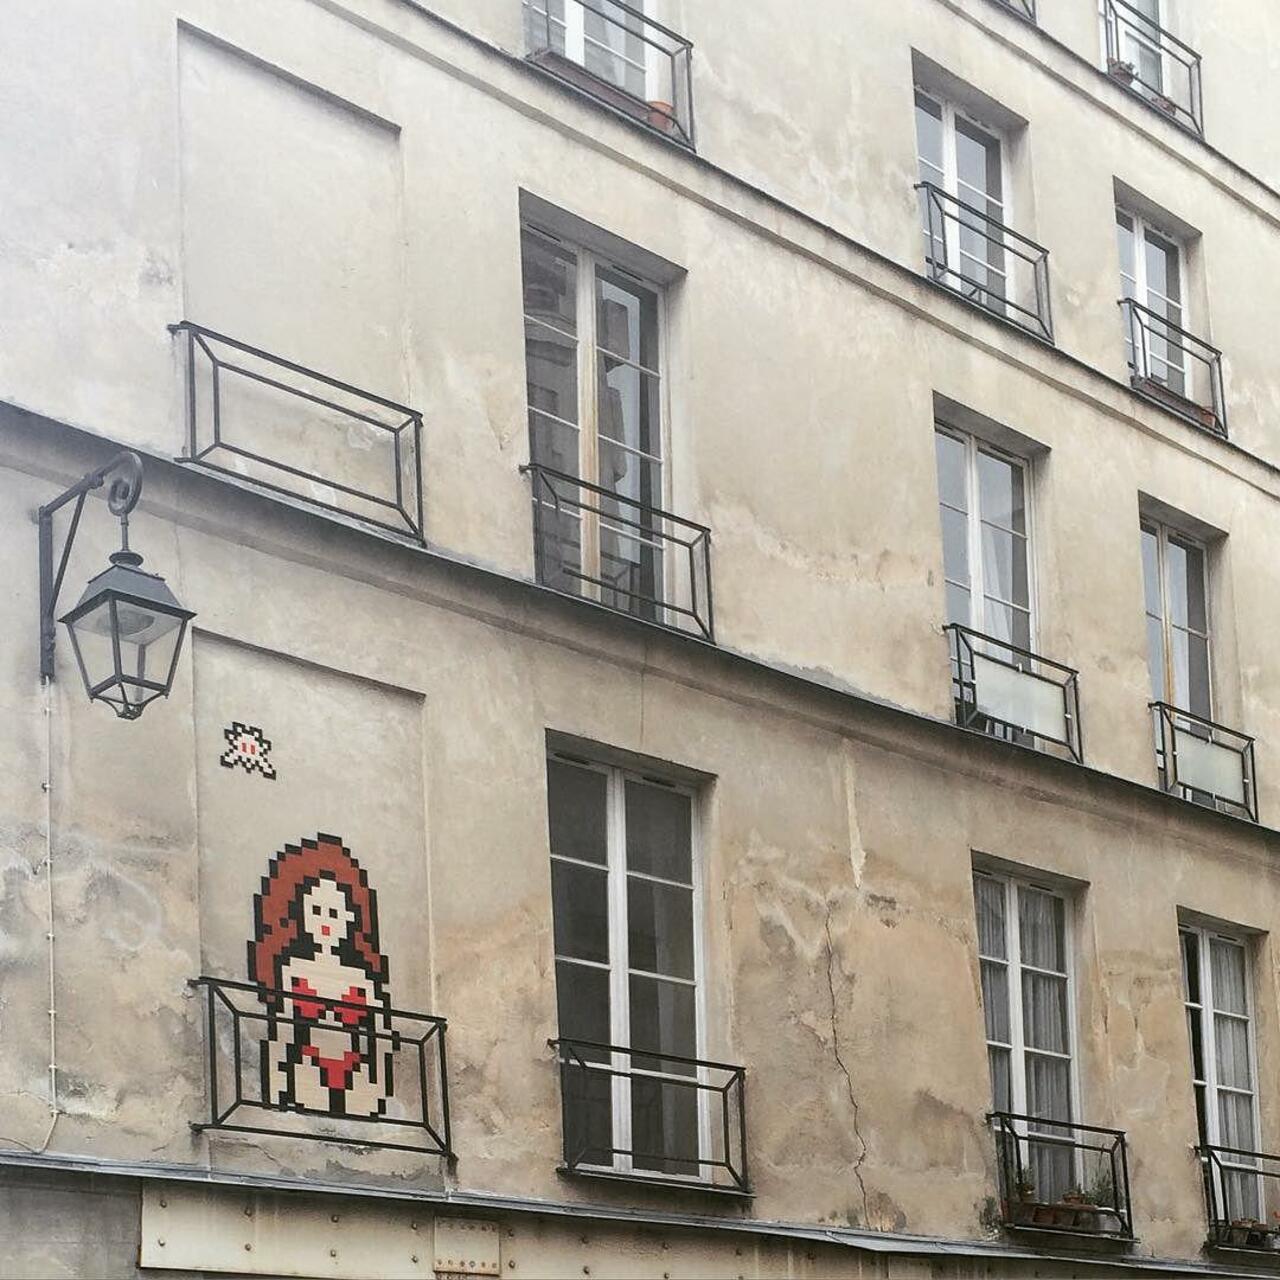 #Paris #graffiti photo by @julienvermeulen http://ift.tt/1QpqbJ6 #StreetArt http://t.co/aHs29muAGD